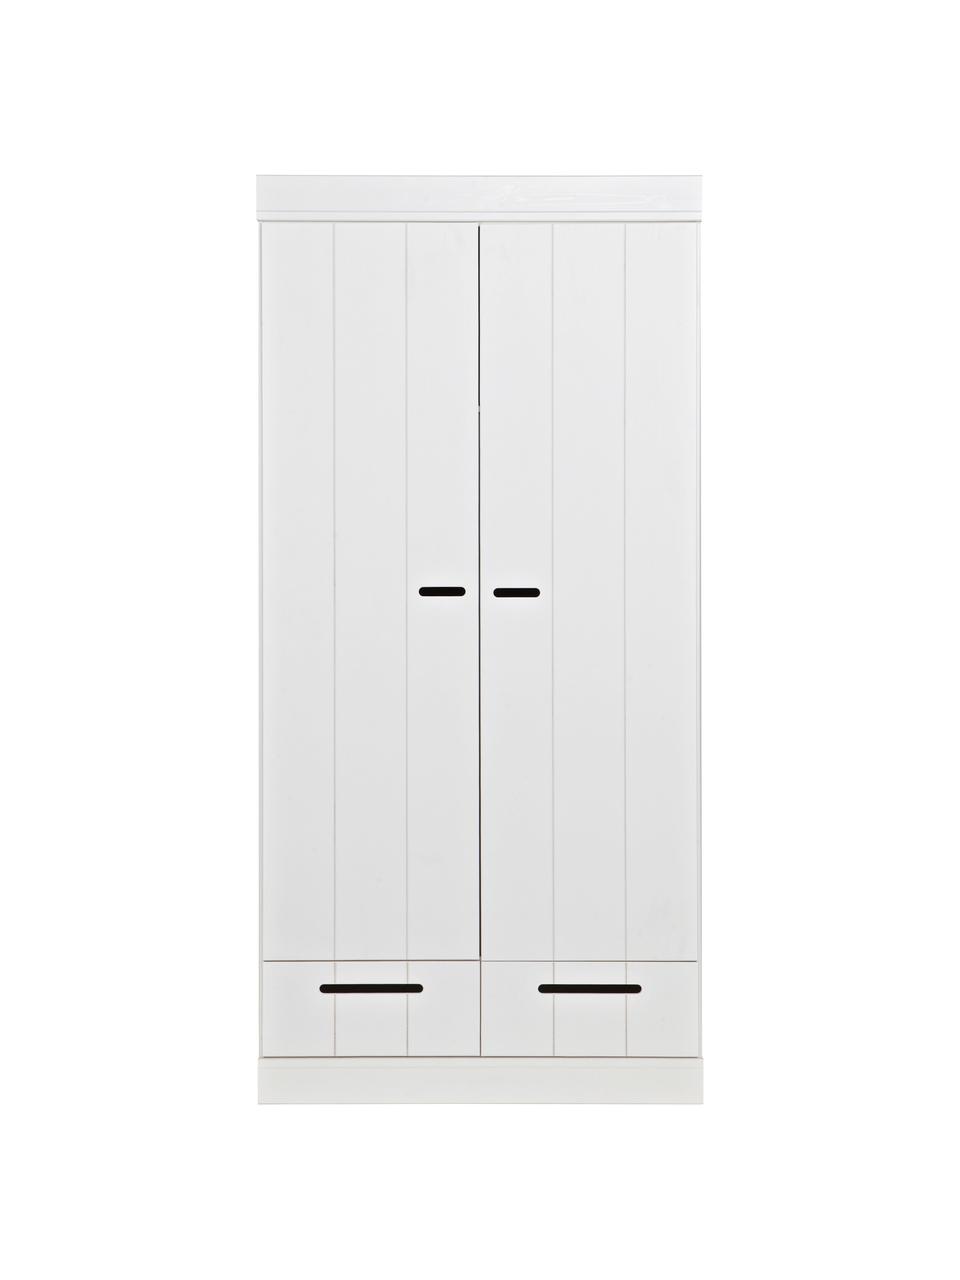 Szafa Connect, 2-drzwiowa, Korpus: lite drewno sosnowe, laki, Biały, S 94 x W 195 cm